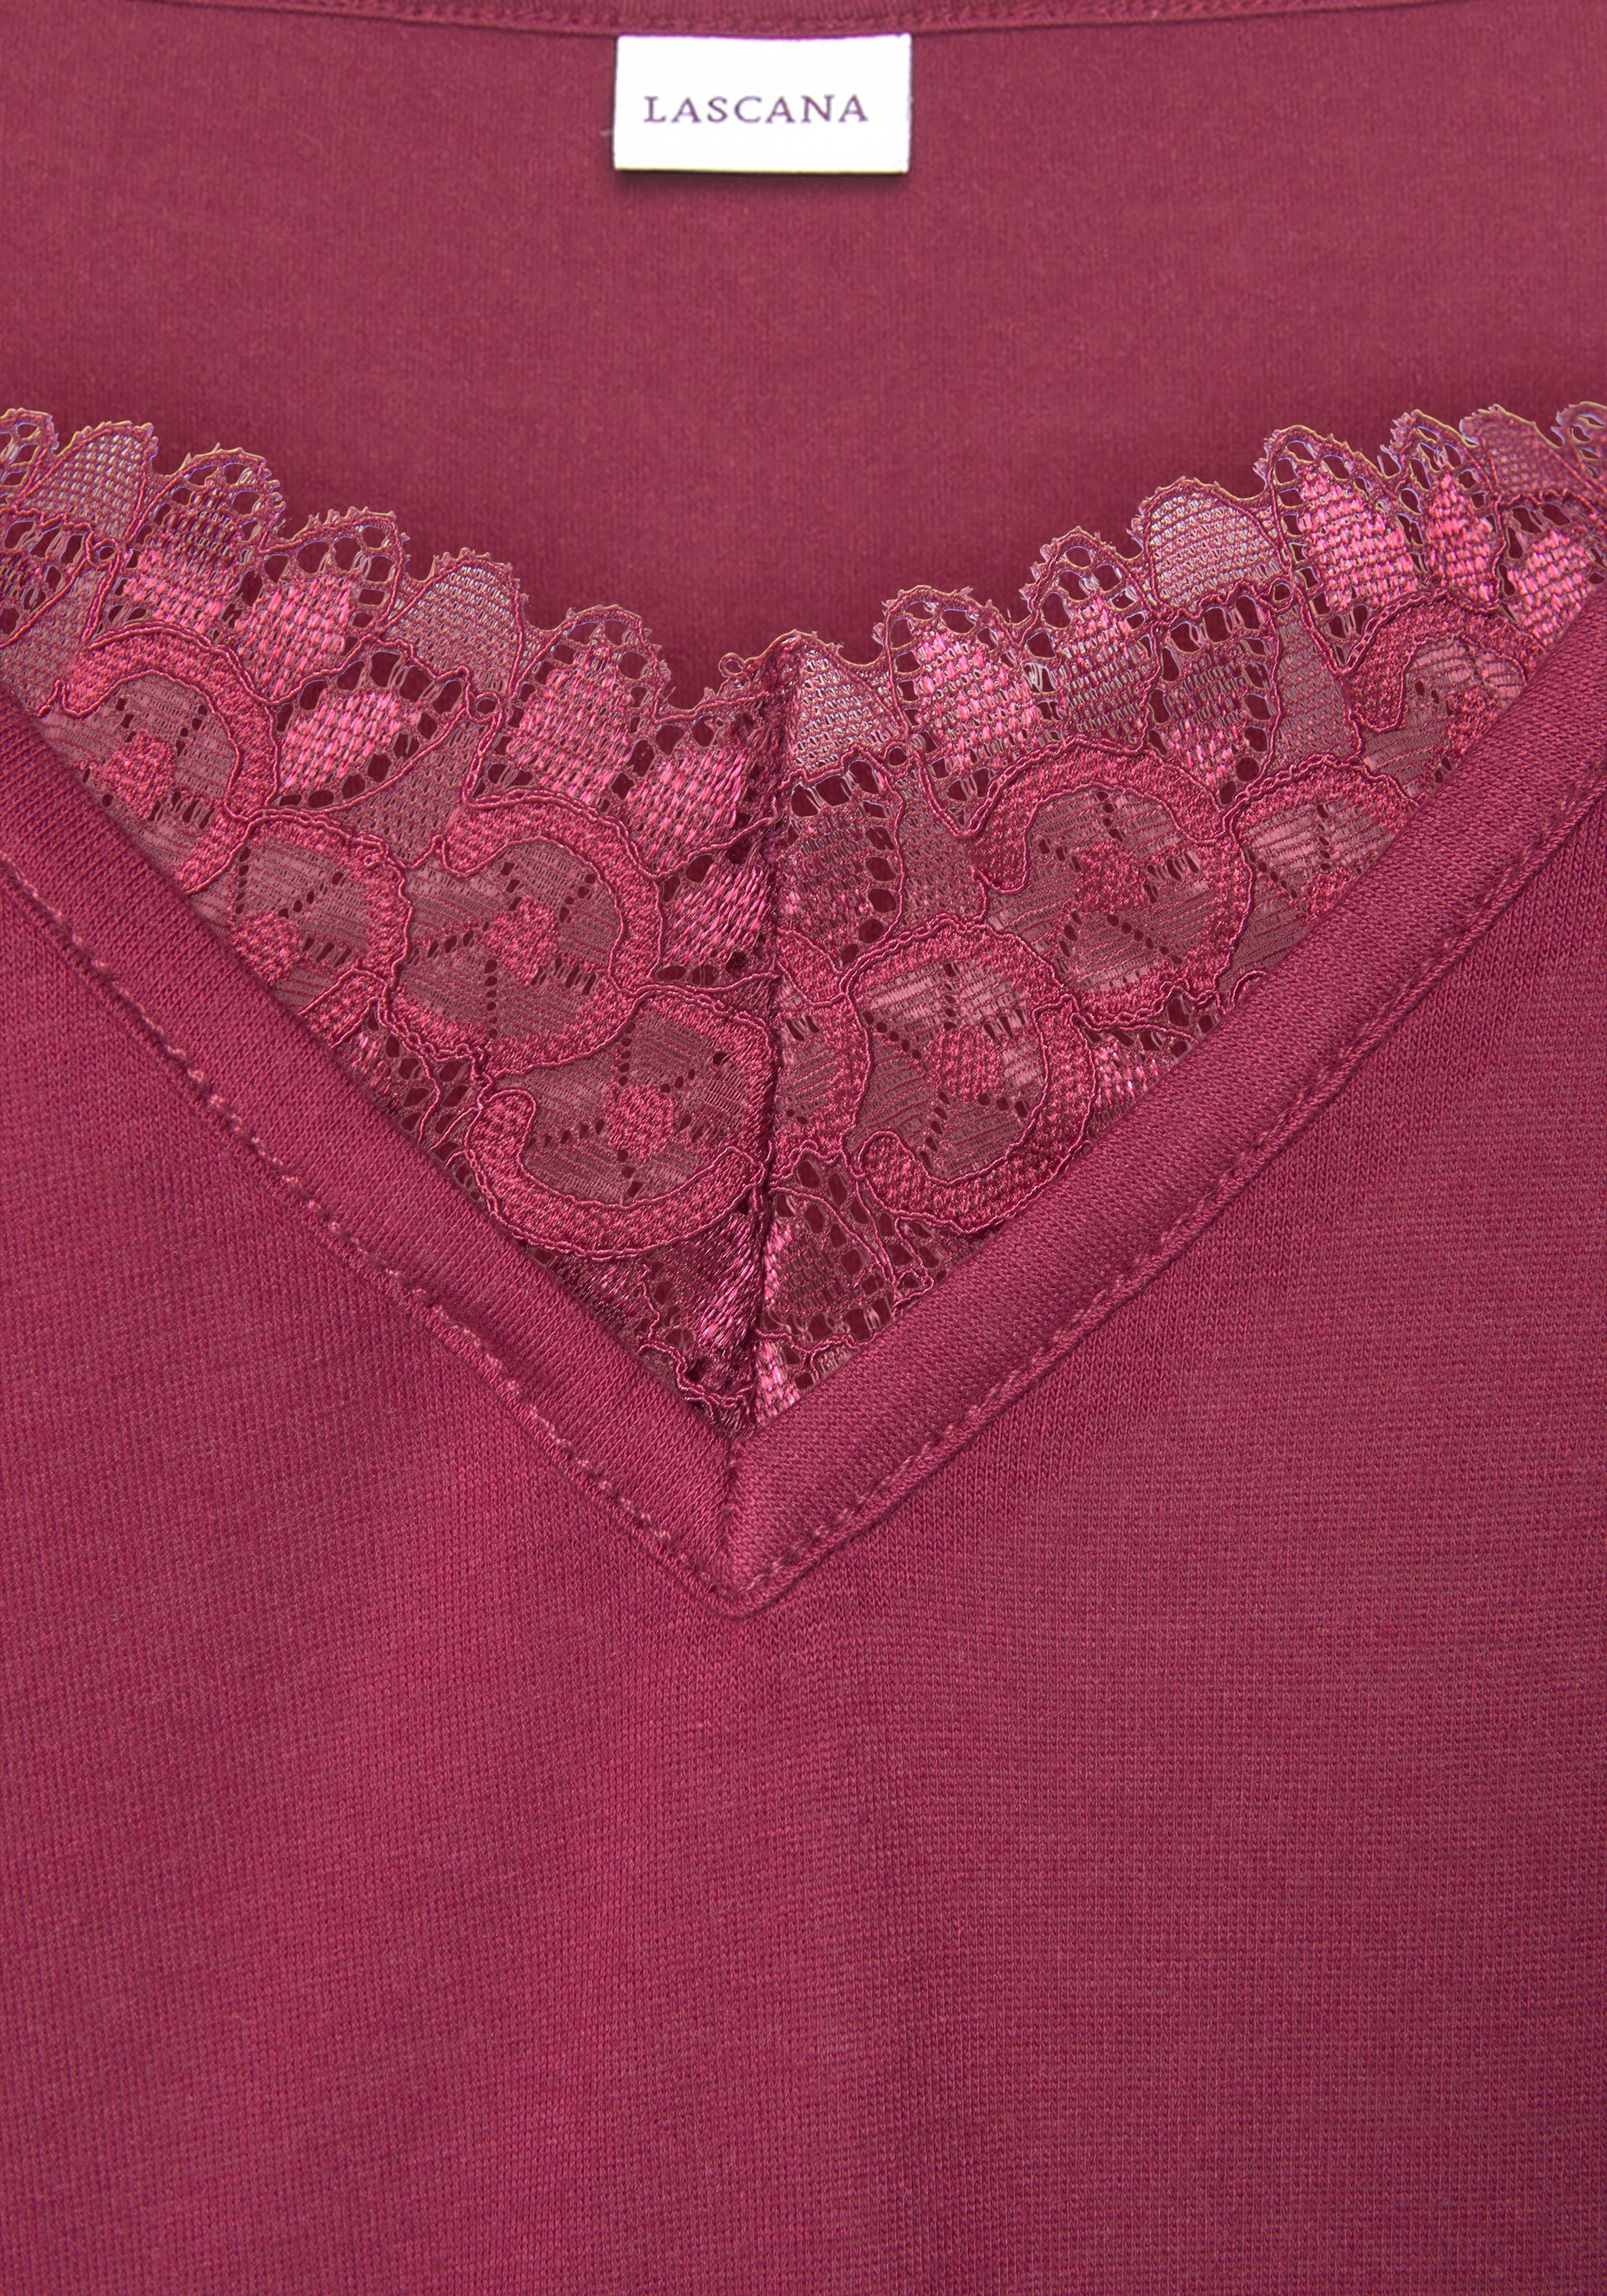 LASCANA Nachthemd, mit Spitzendetail und halblangen Ärmeln online kaufen